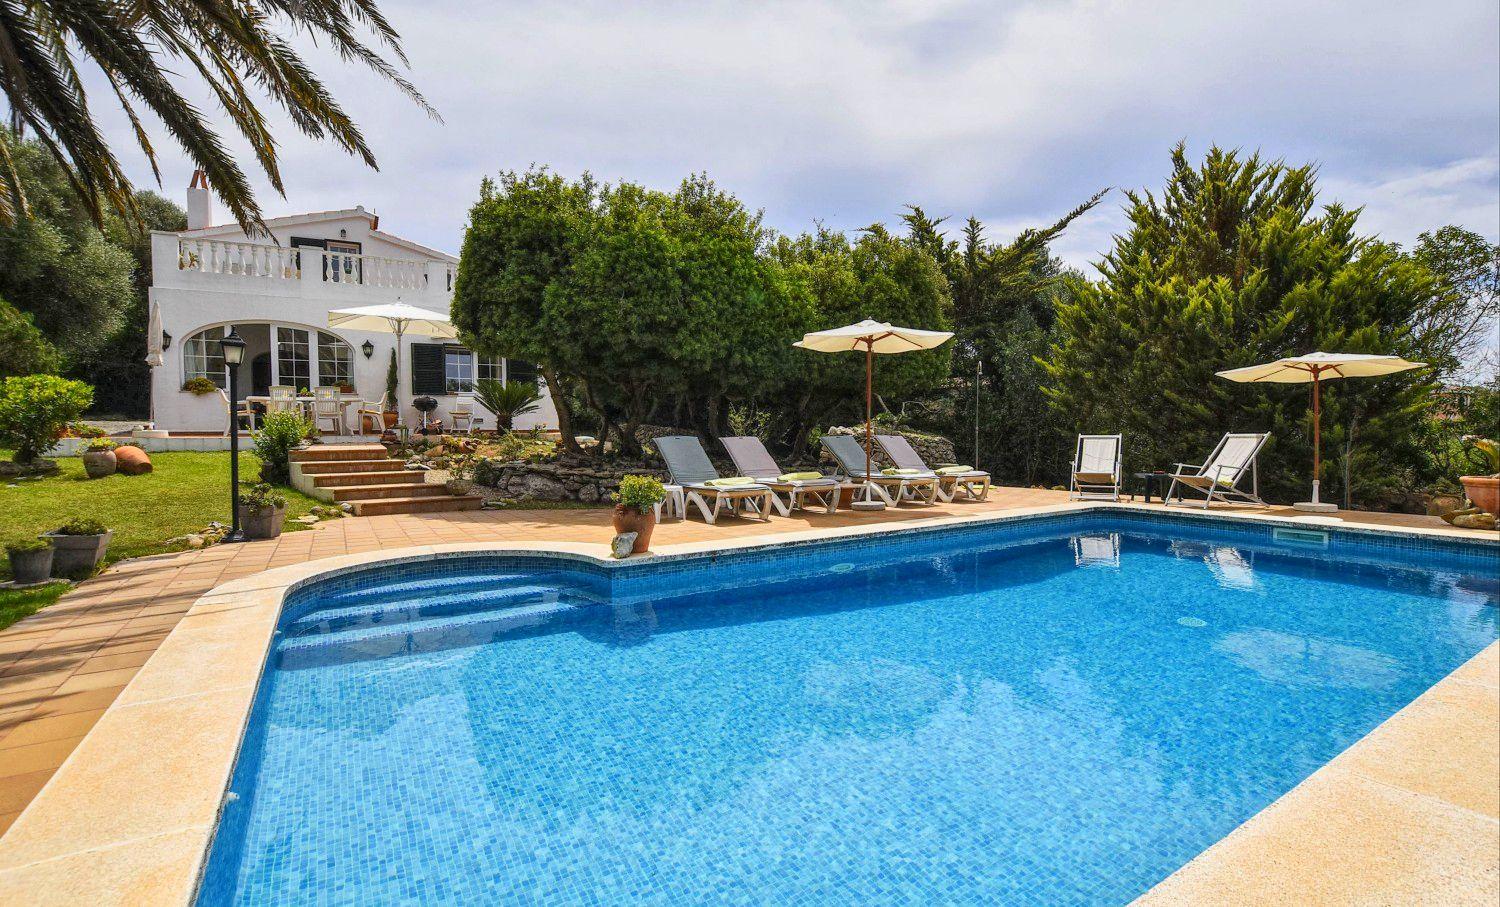 Ferienhaus mit Privatpool für 8 Personen ca 140 m² in L Argentina Menorca Binnenland von Menorca